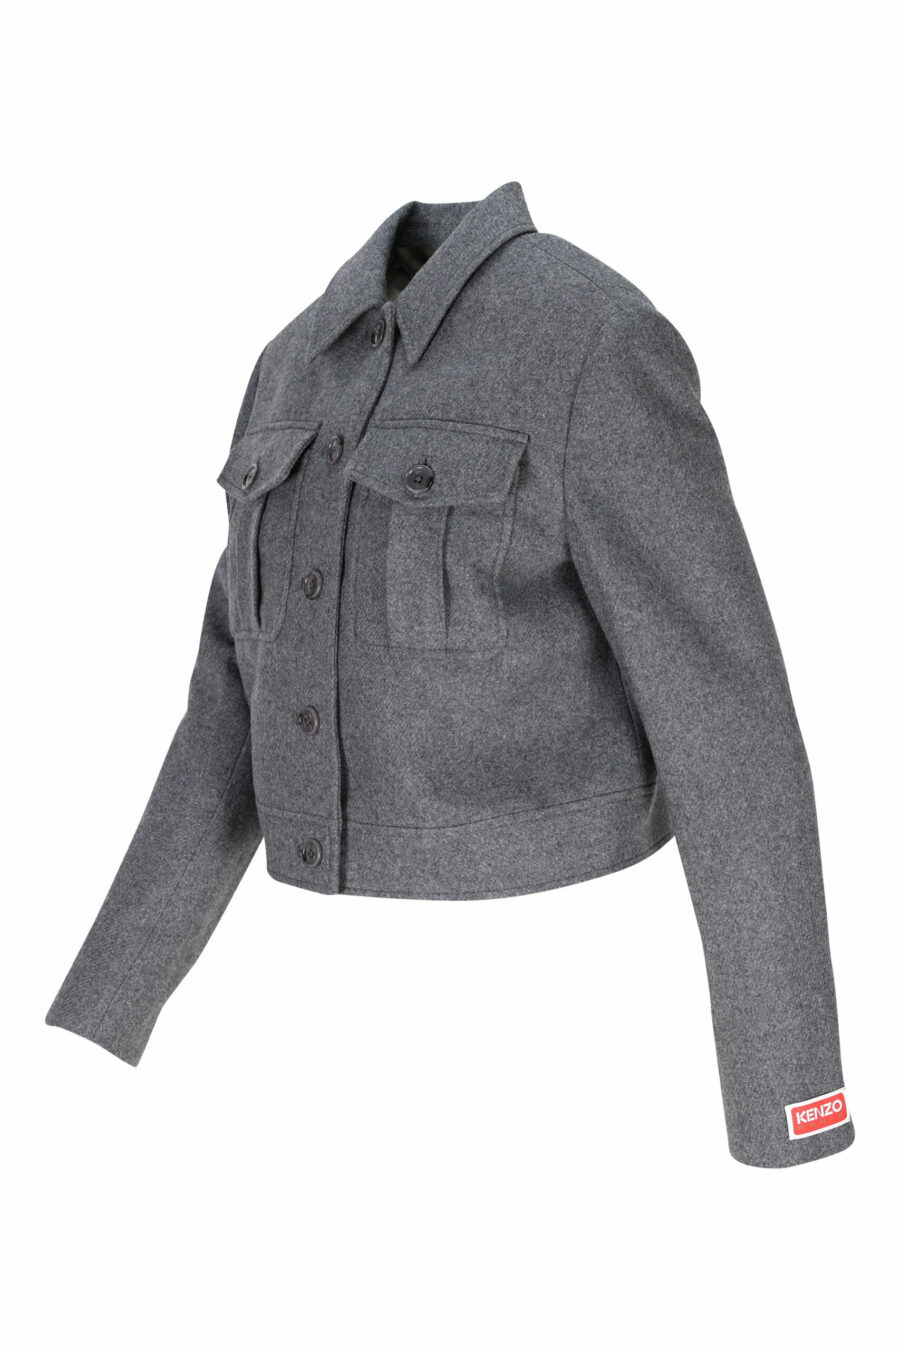 Graue Jacke mit Mini-Logo auf dem Ärmel - 3612230490567 1 skaliert